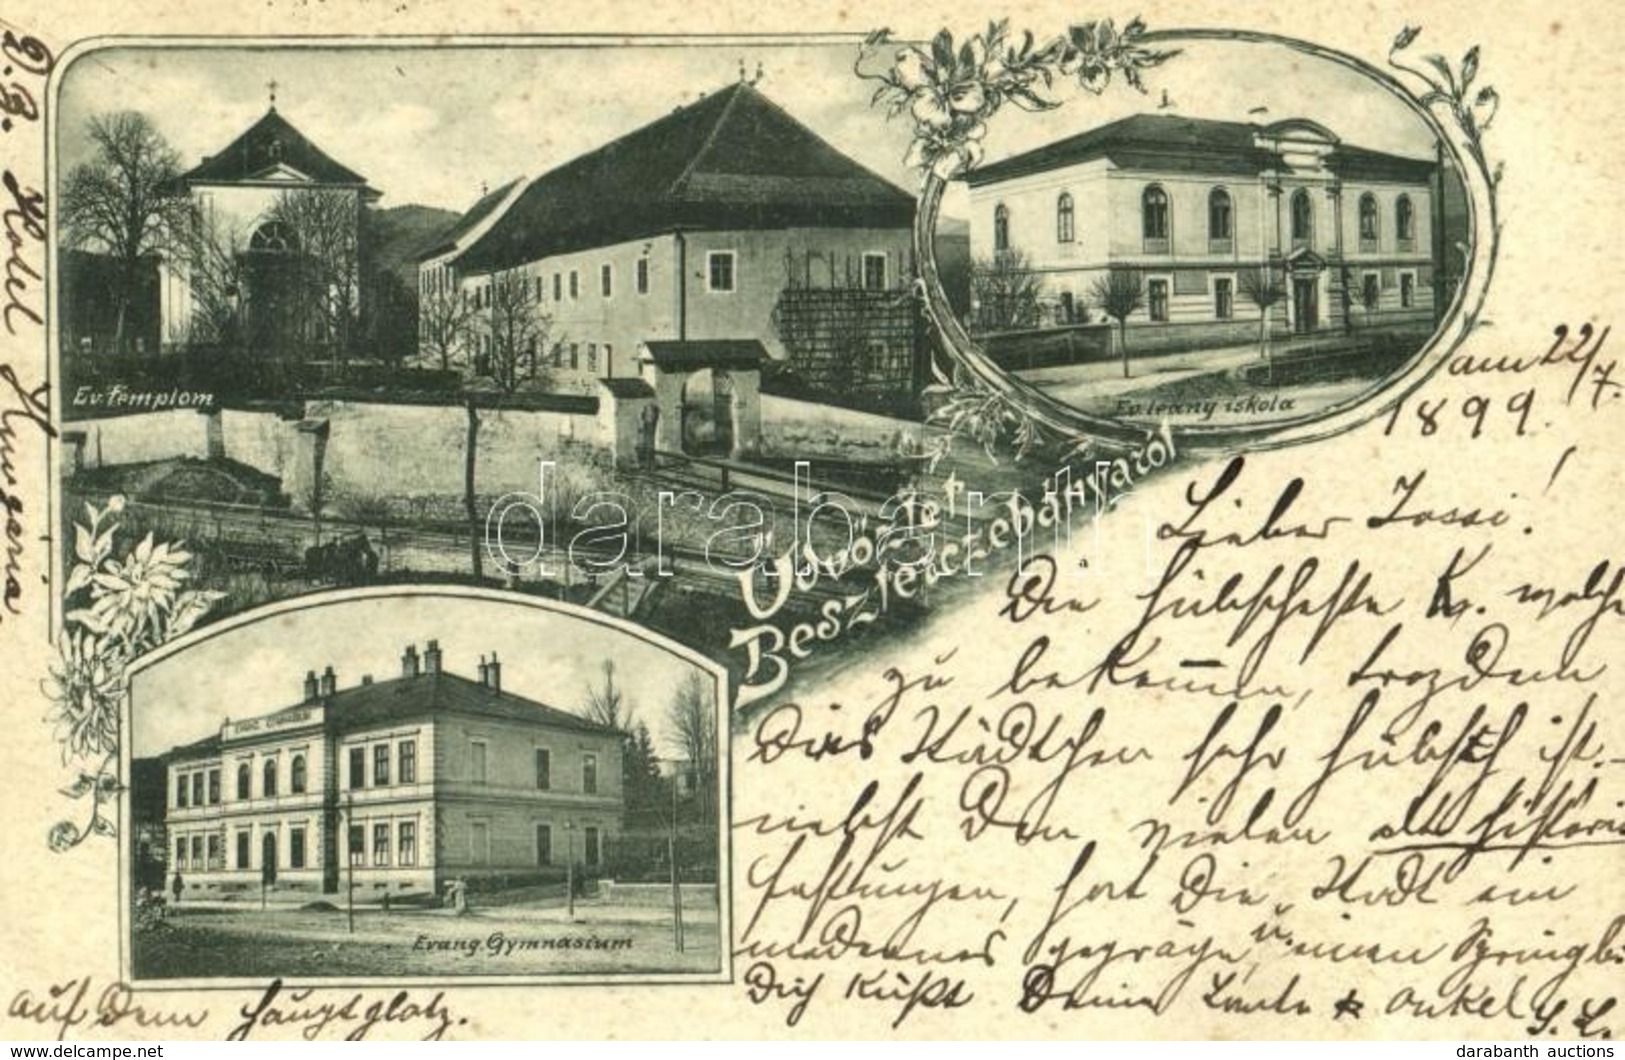 T2/T3 1899 (Vorläufer!) Besztercebánya, Banská Bystrica; Evangélikus Templom, Gimnázium és Leány Iskola / Lutheran Churc - Non Classés